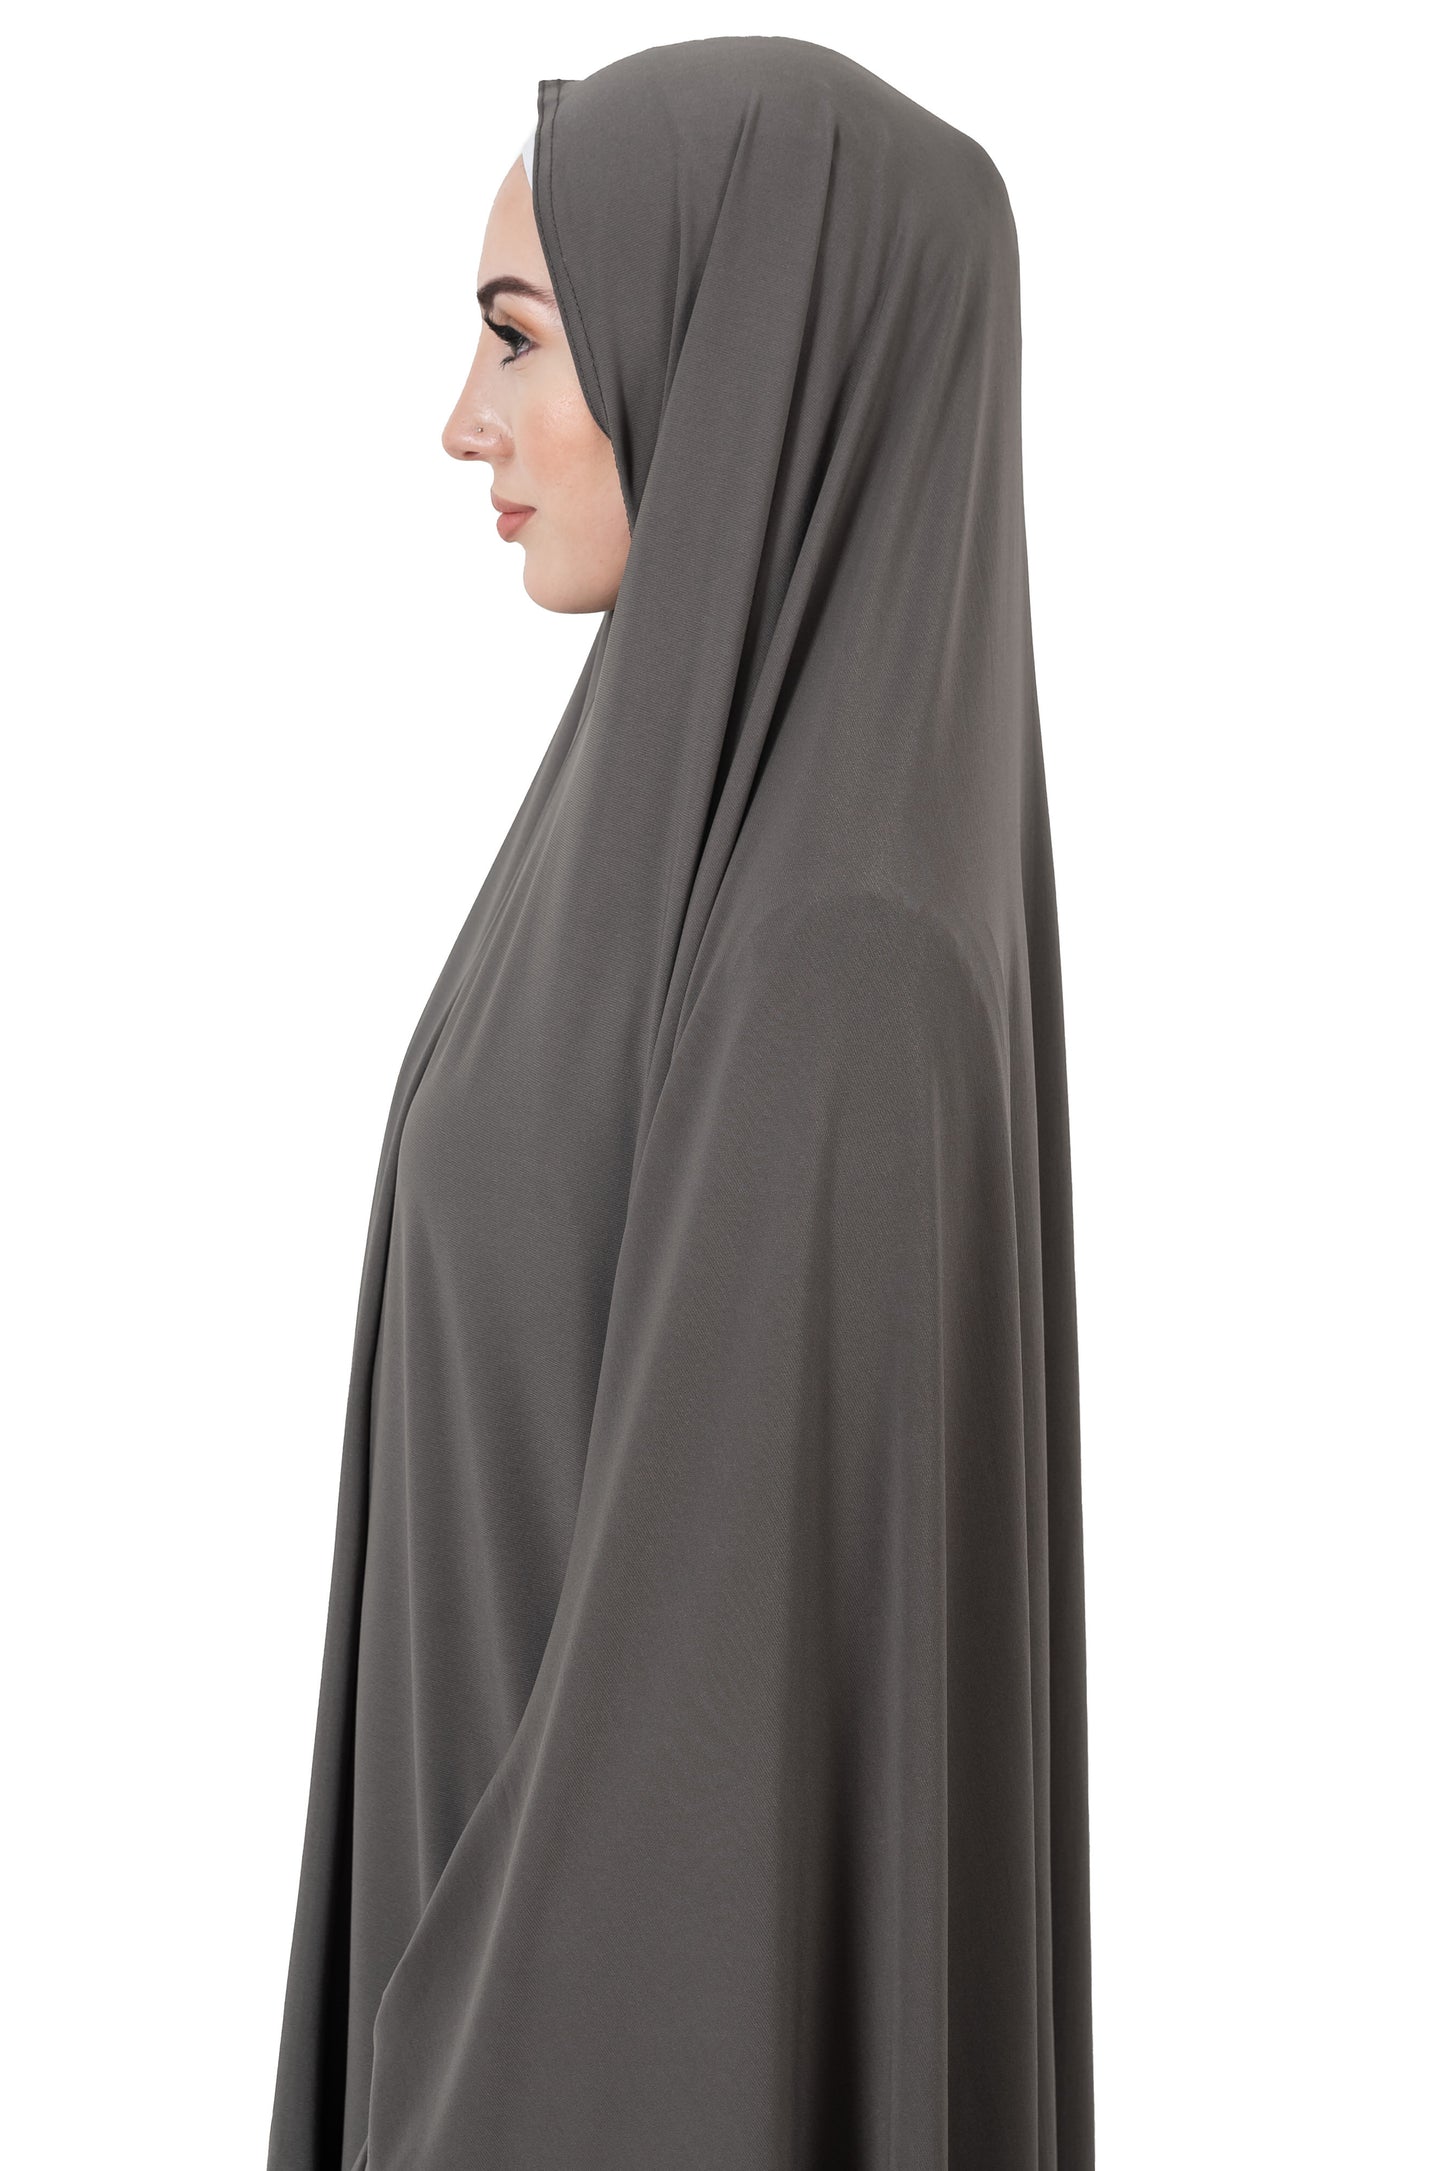 Standard Sleeved Jelbab in Truffle